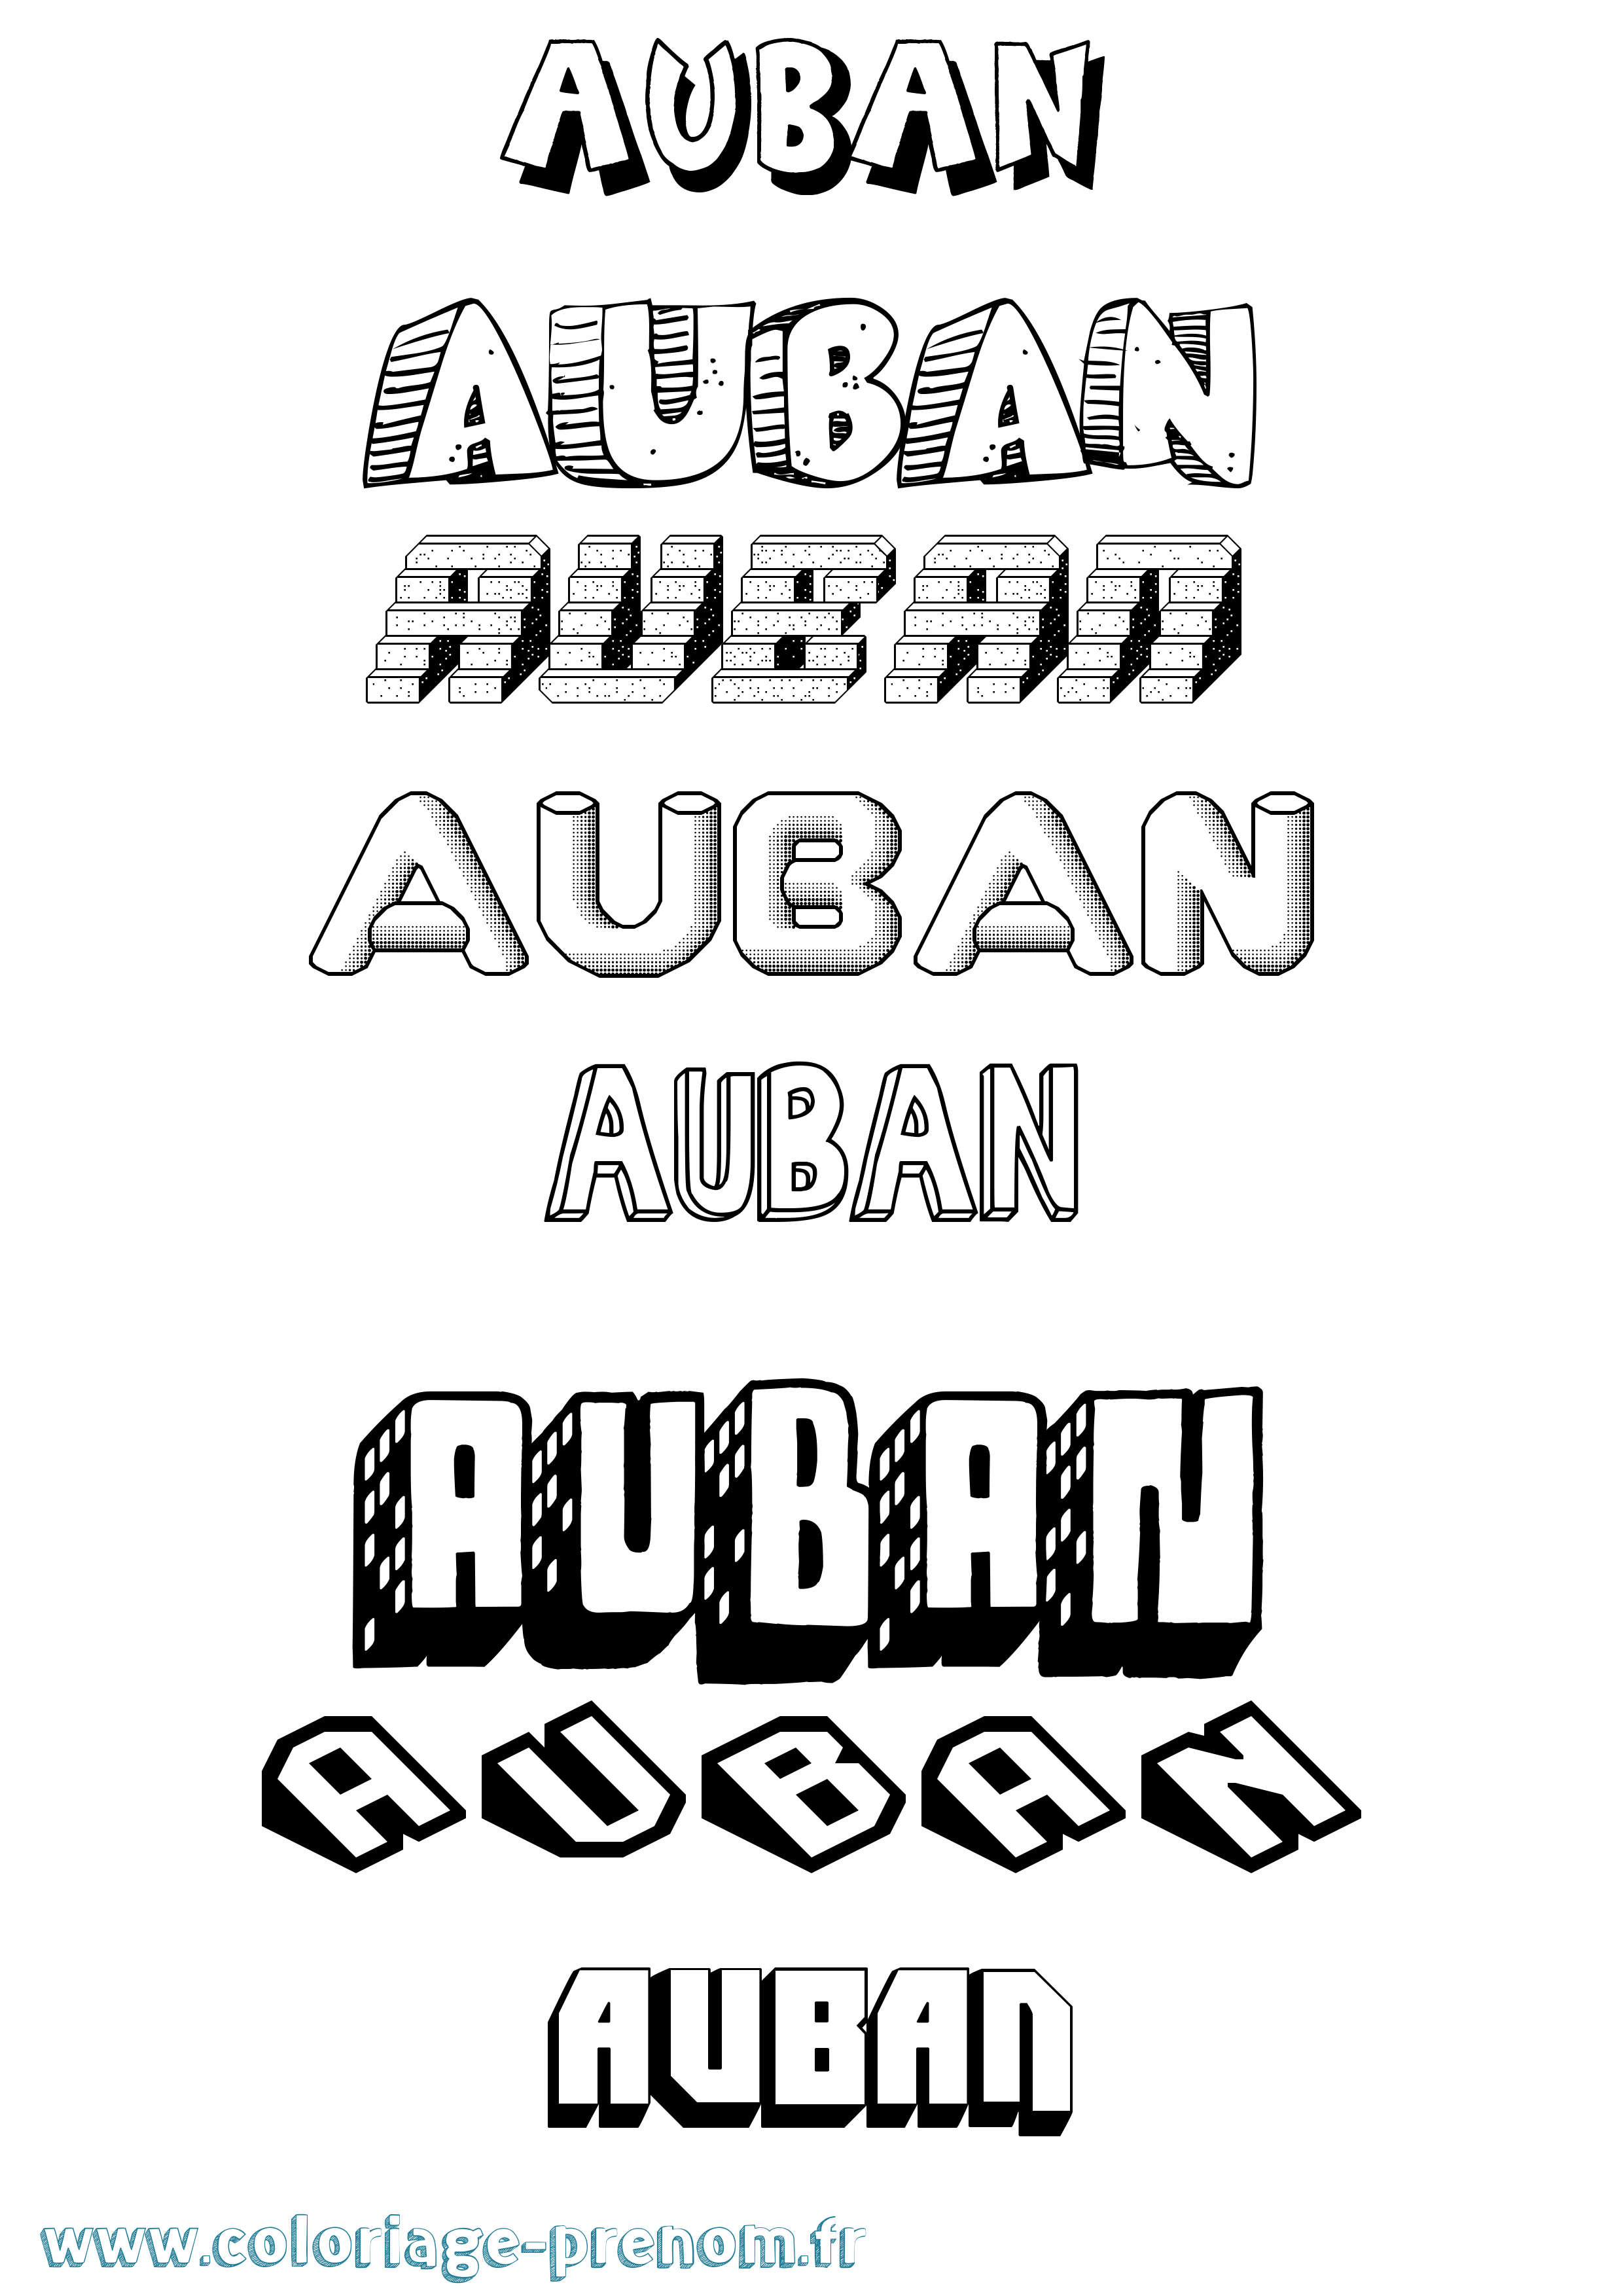 Coloriage prénom Auban Effet 3D